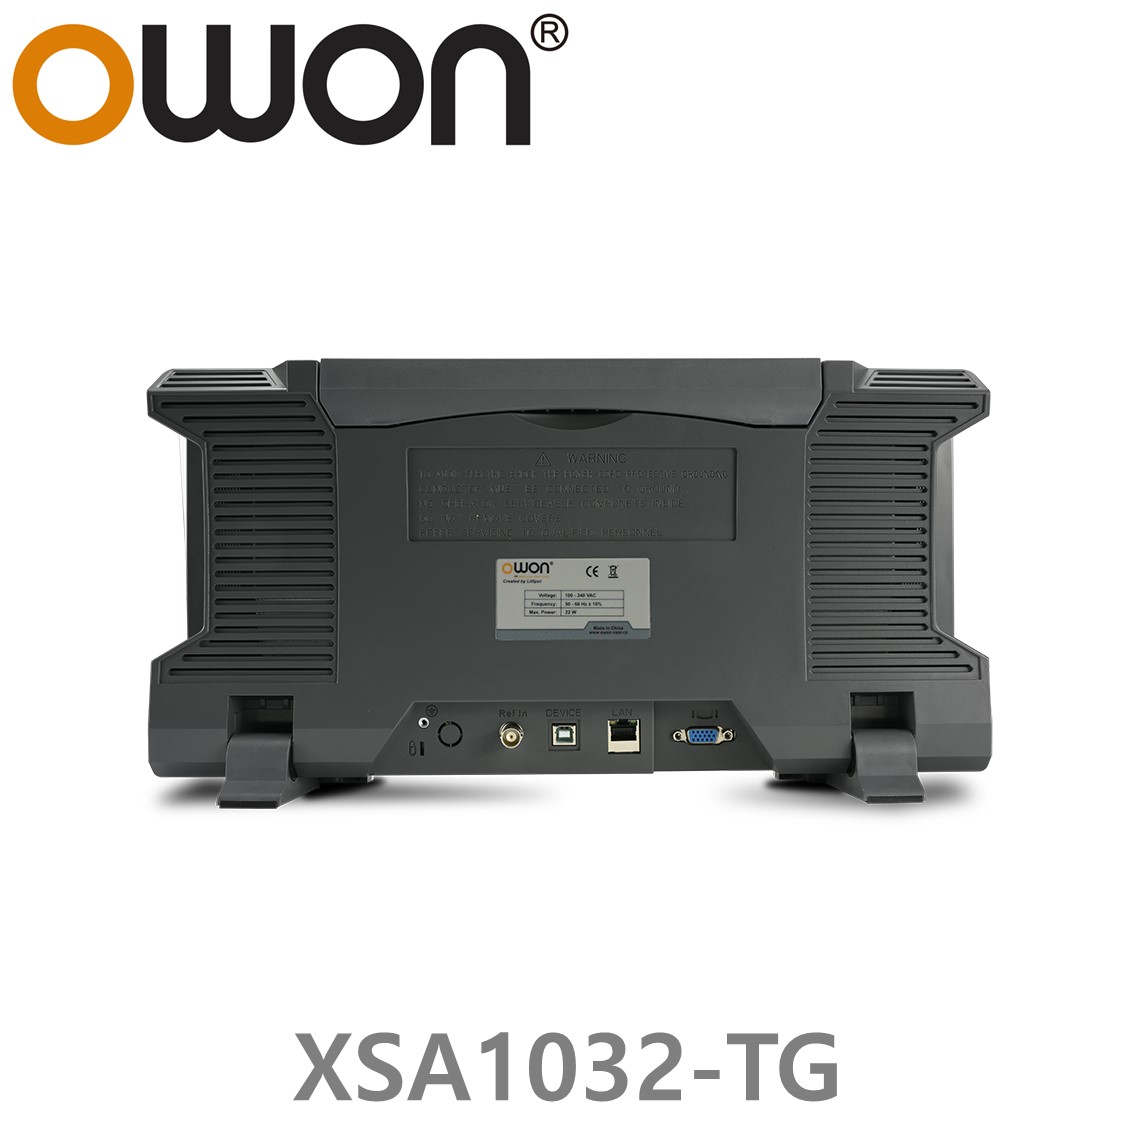 [ OWON ] XSA1032-TG 스펙트럼 아날라이저 9kHz~3.2GHz 트래킹 제너레이터